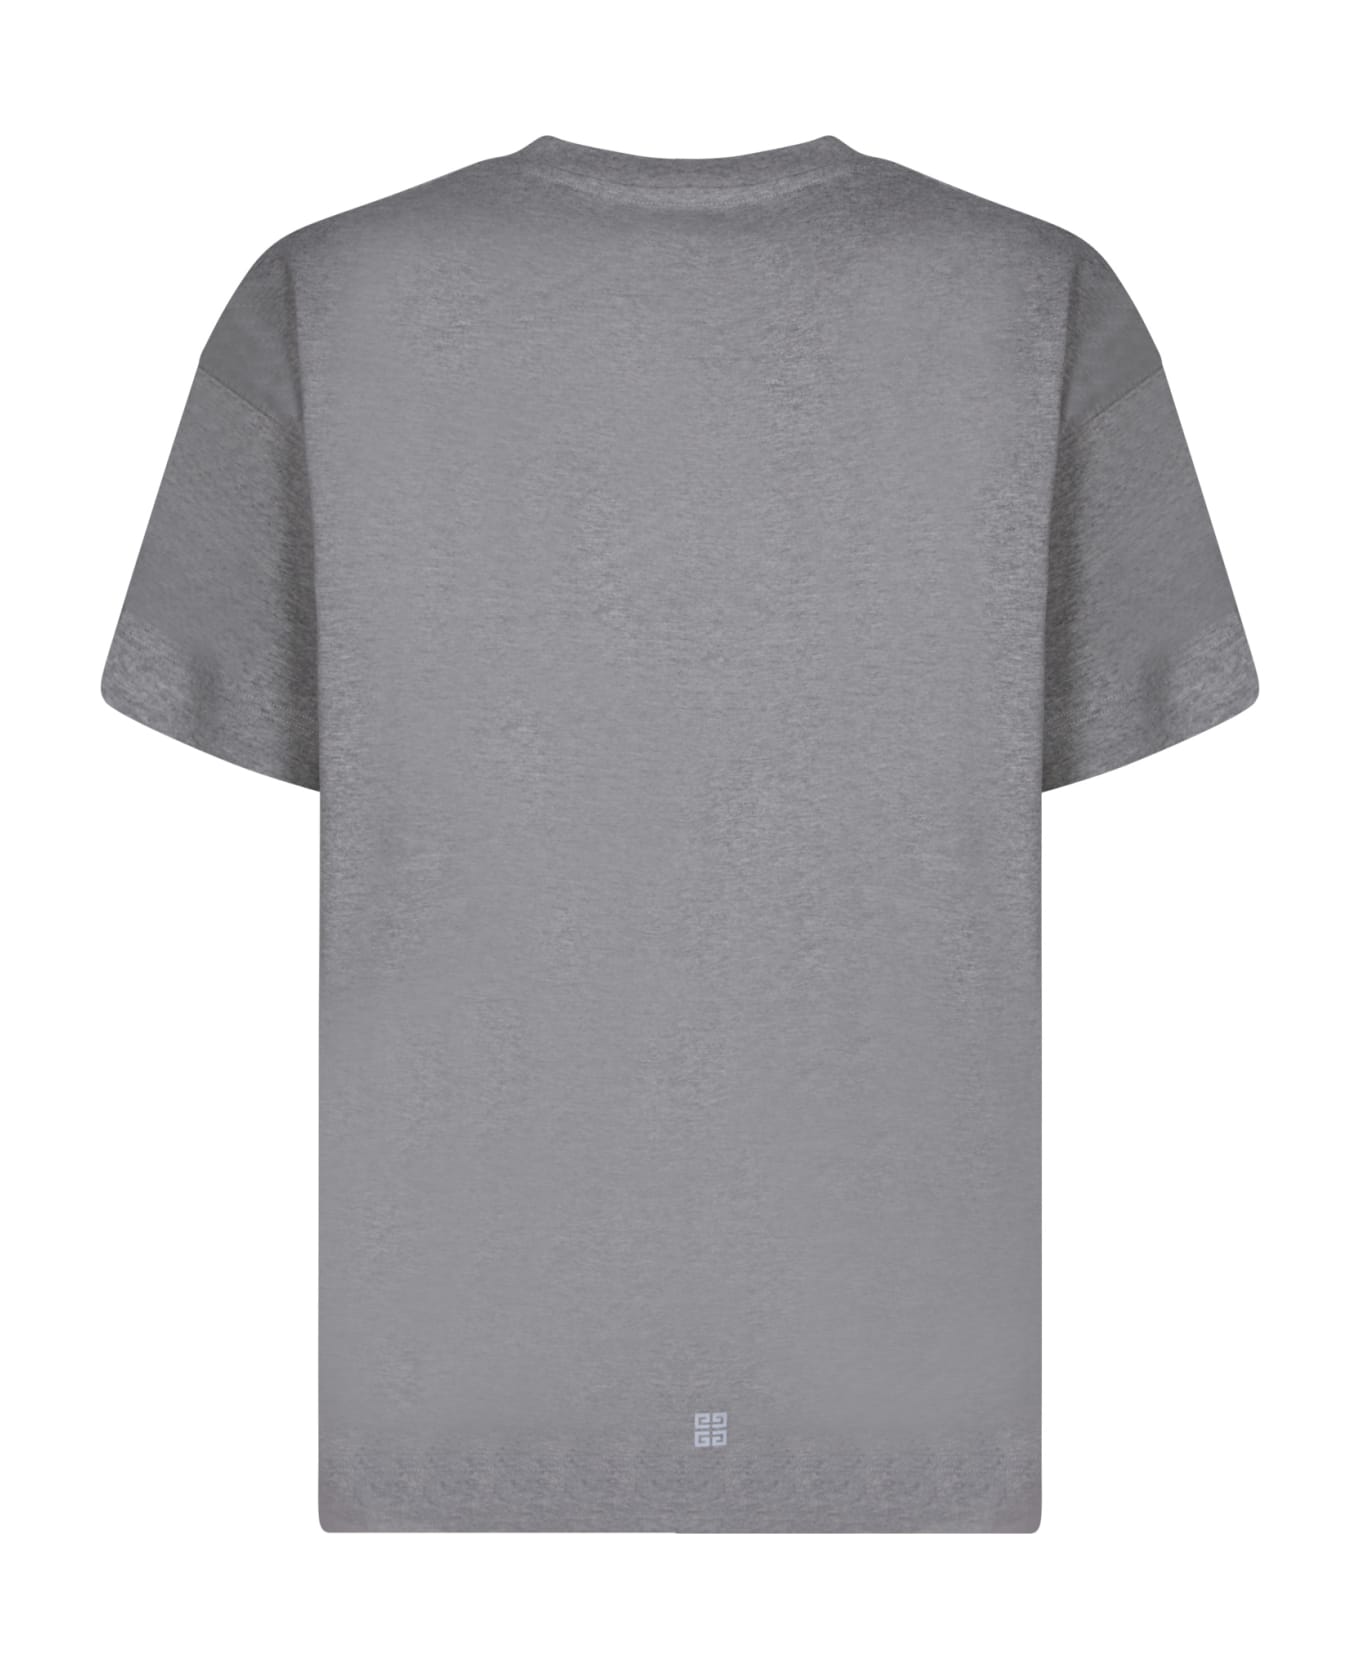 Givenchy Logo Printed Crewneck T-shirt - Grey